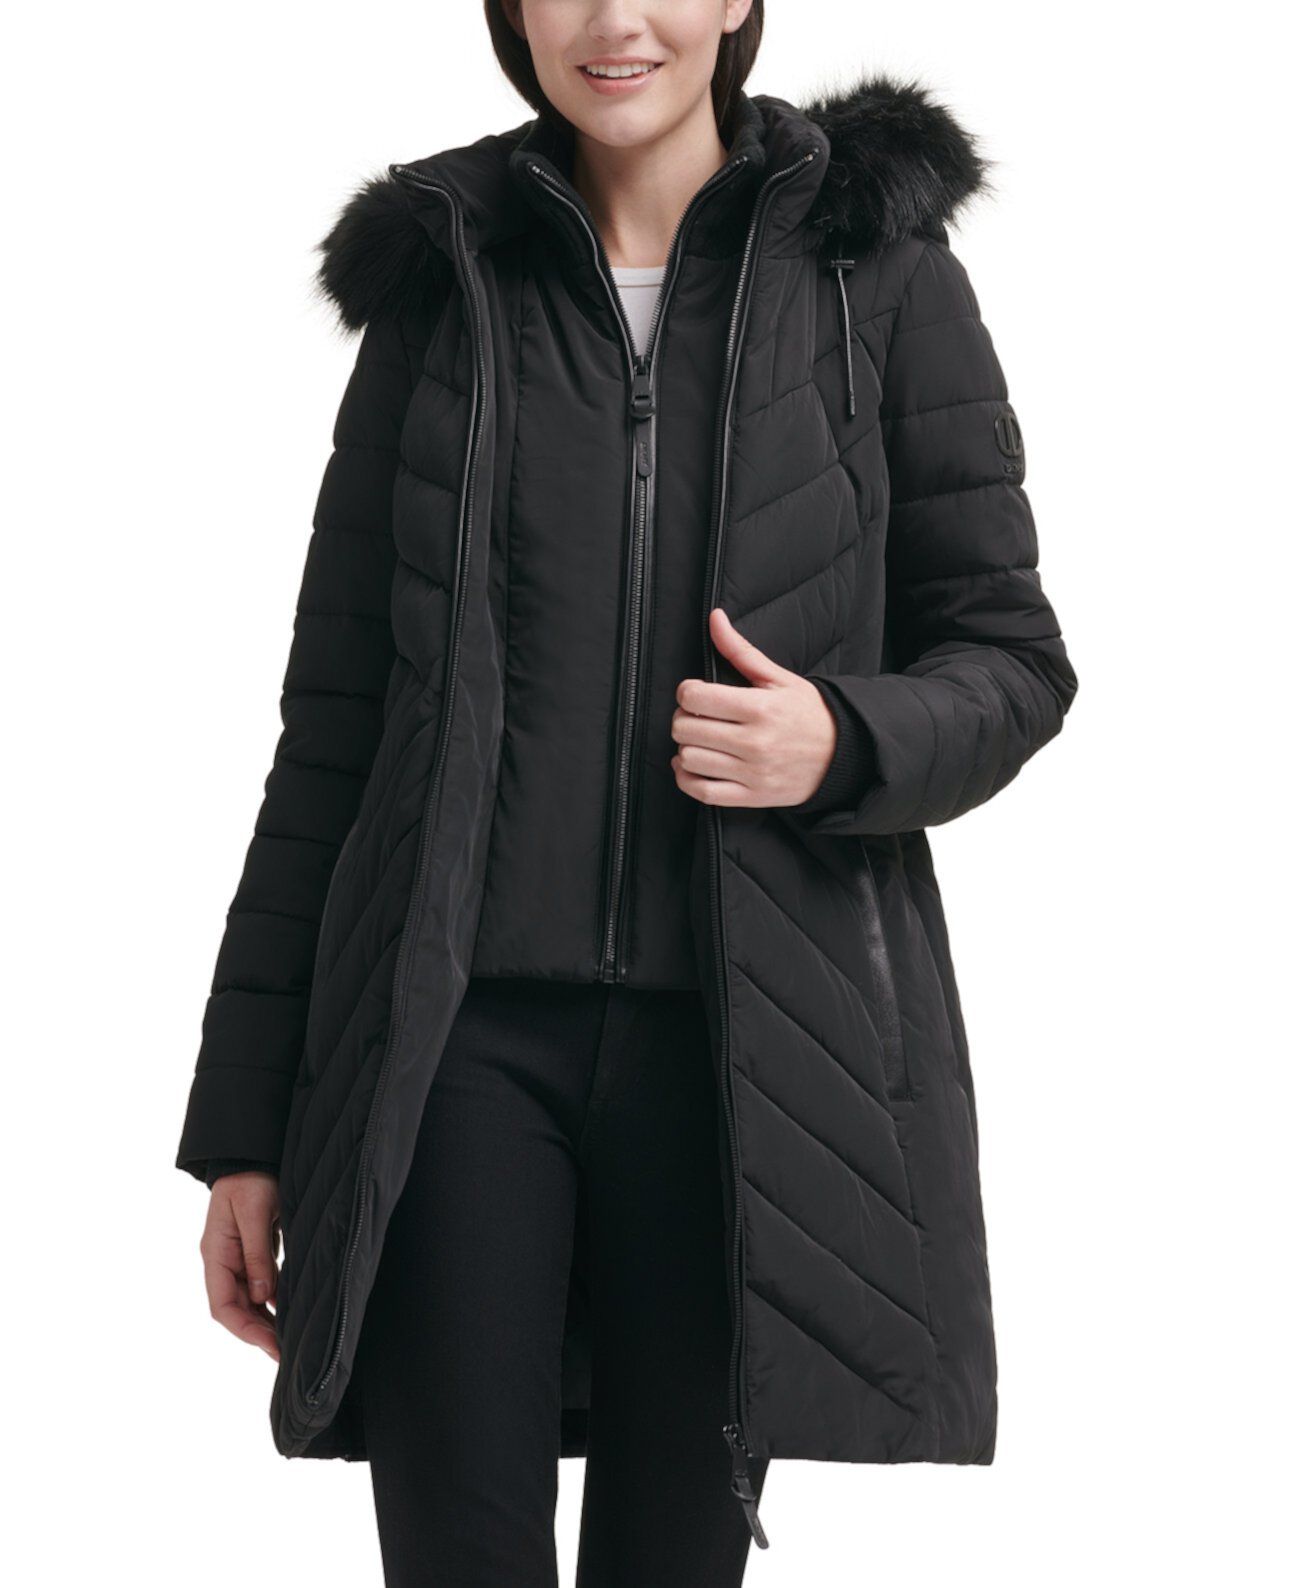 Женское пуховое пальто с капюшоном и отделкой из искусственного меха DKNY